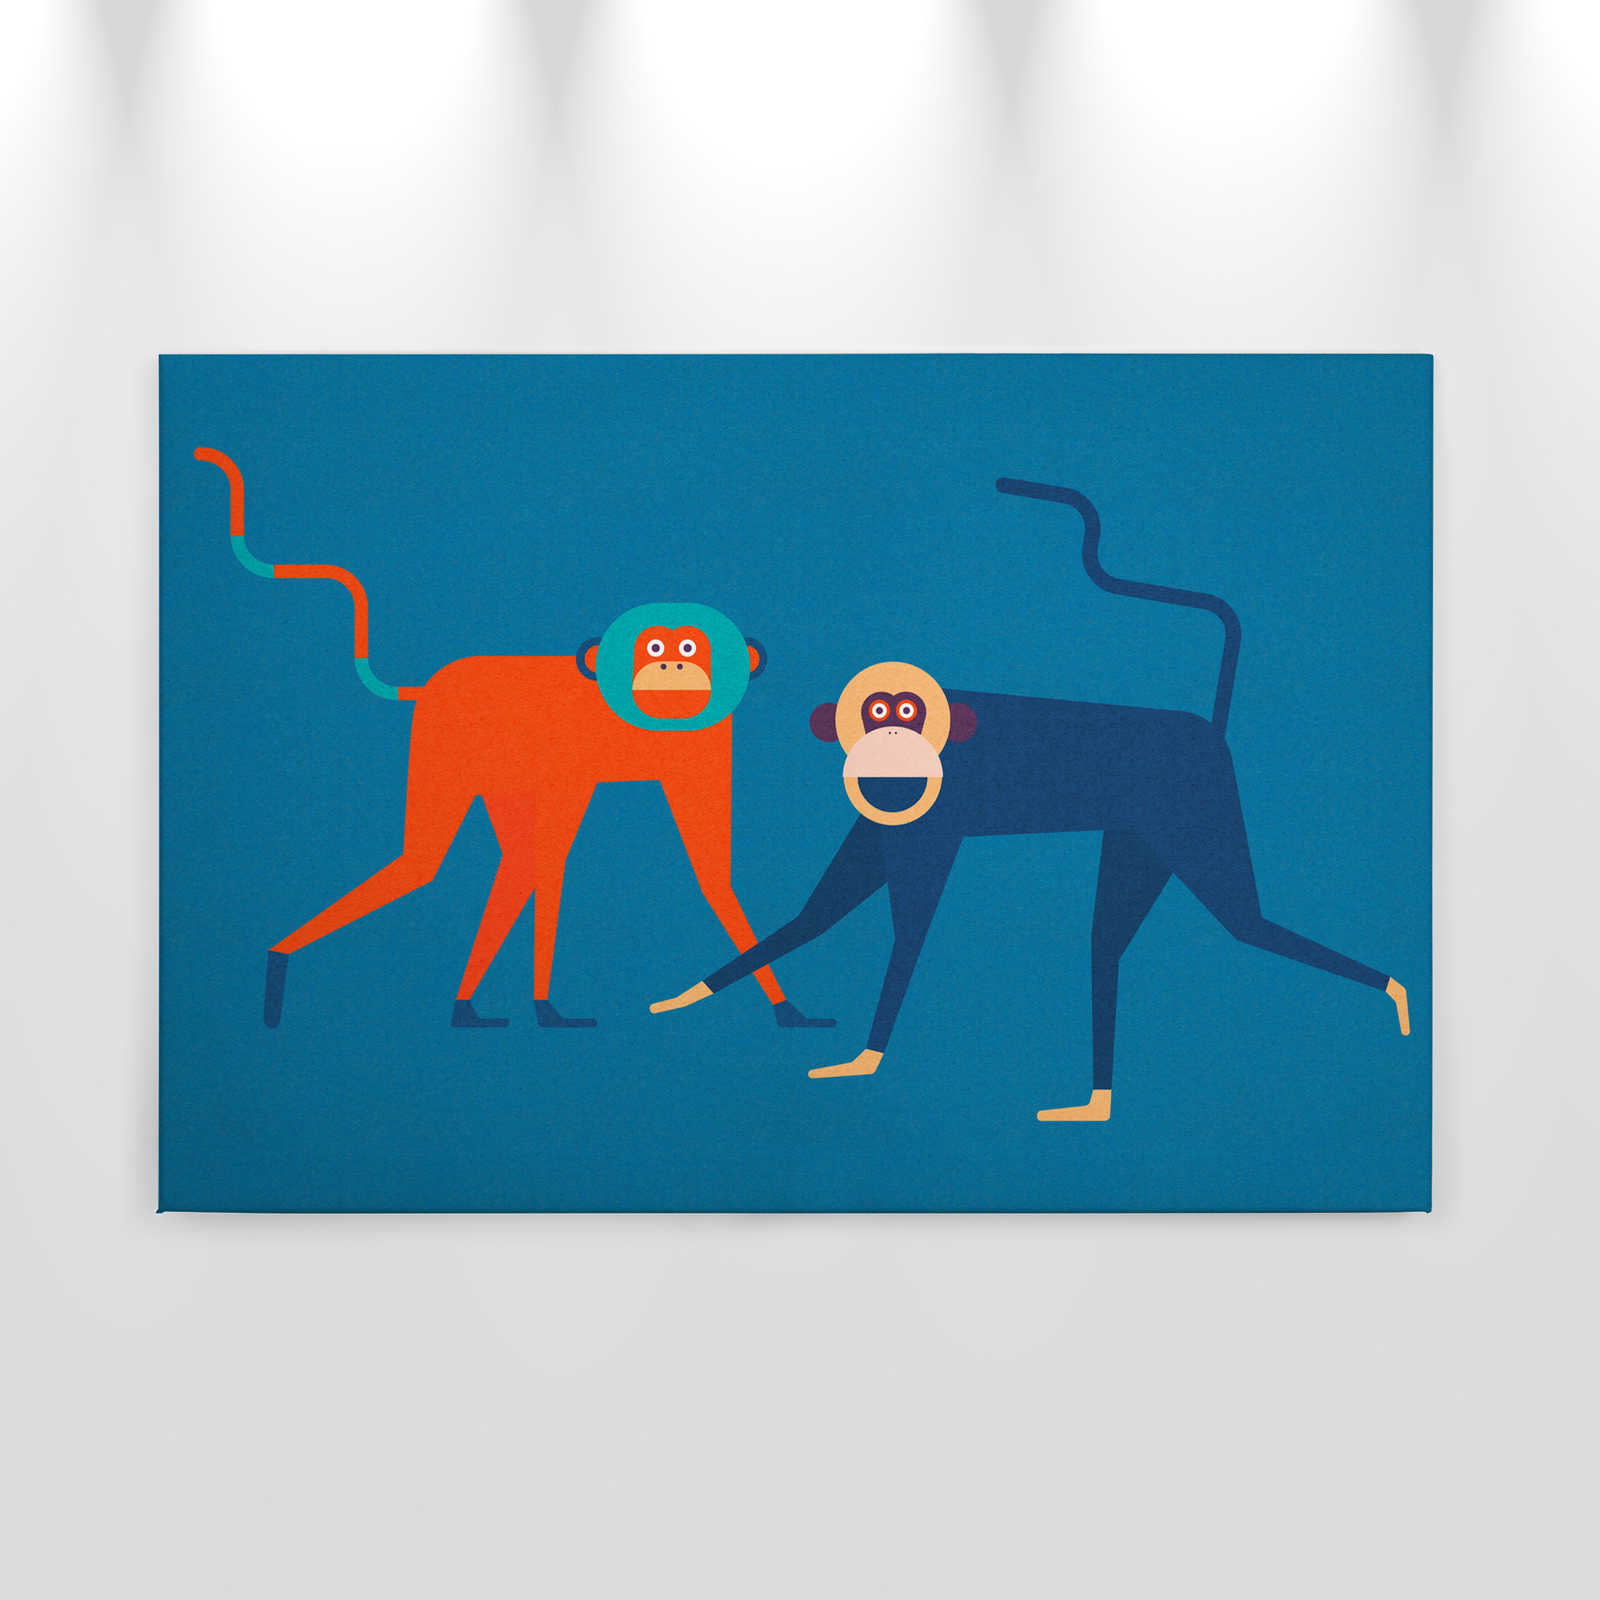             Monkey Business 2 - Quadro su tela Monkey Gang in stile fumetto - Natura qualita consistenza in cartone - 0,90 m x 0,60 m
        